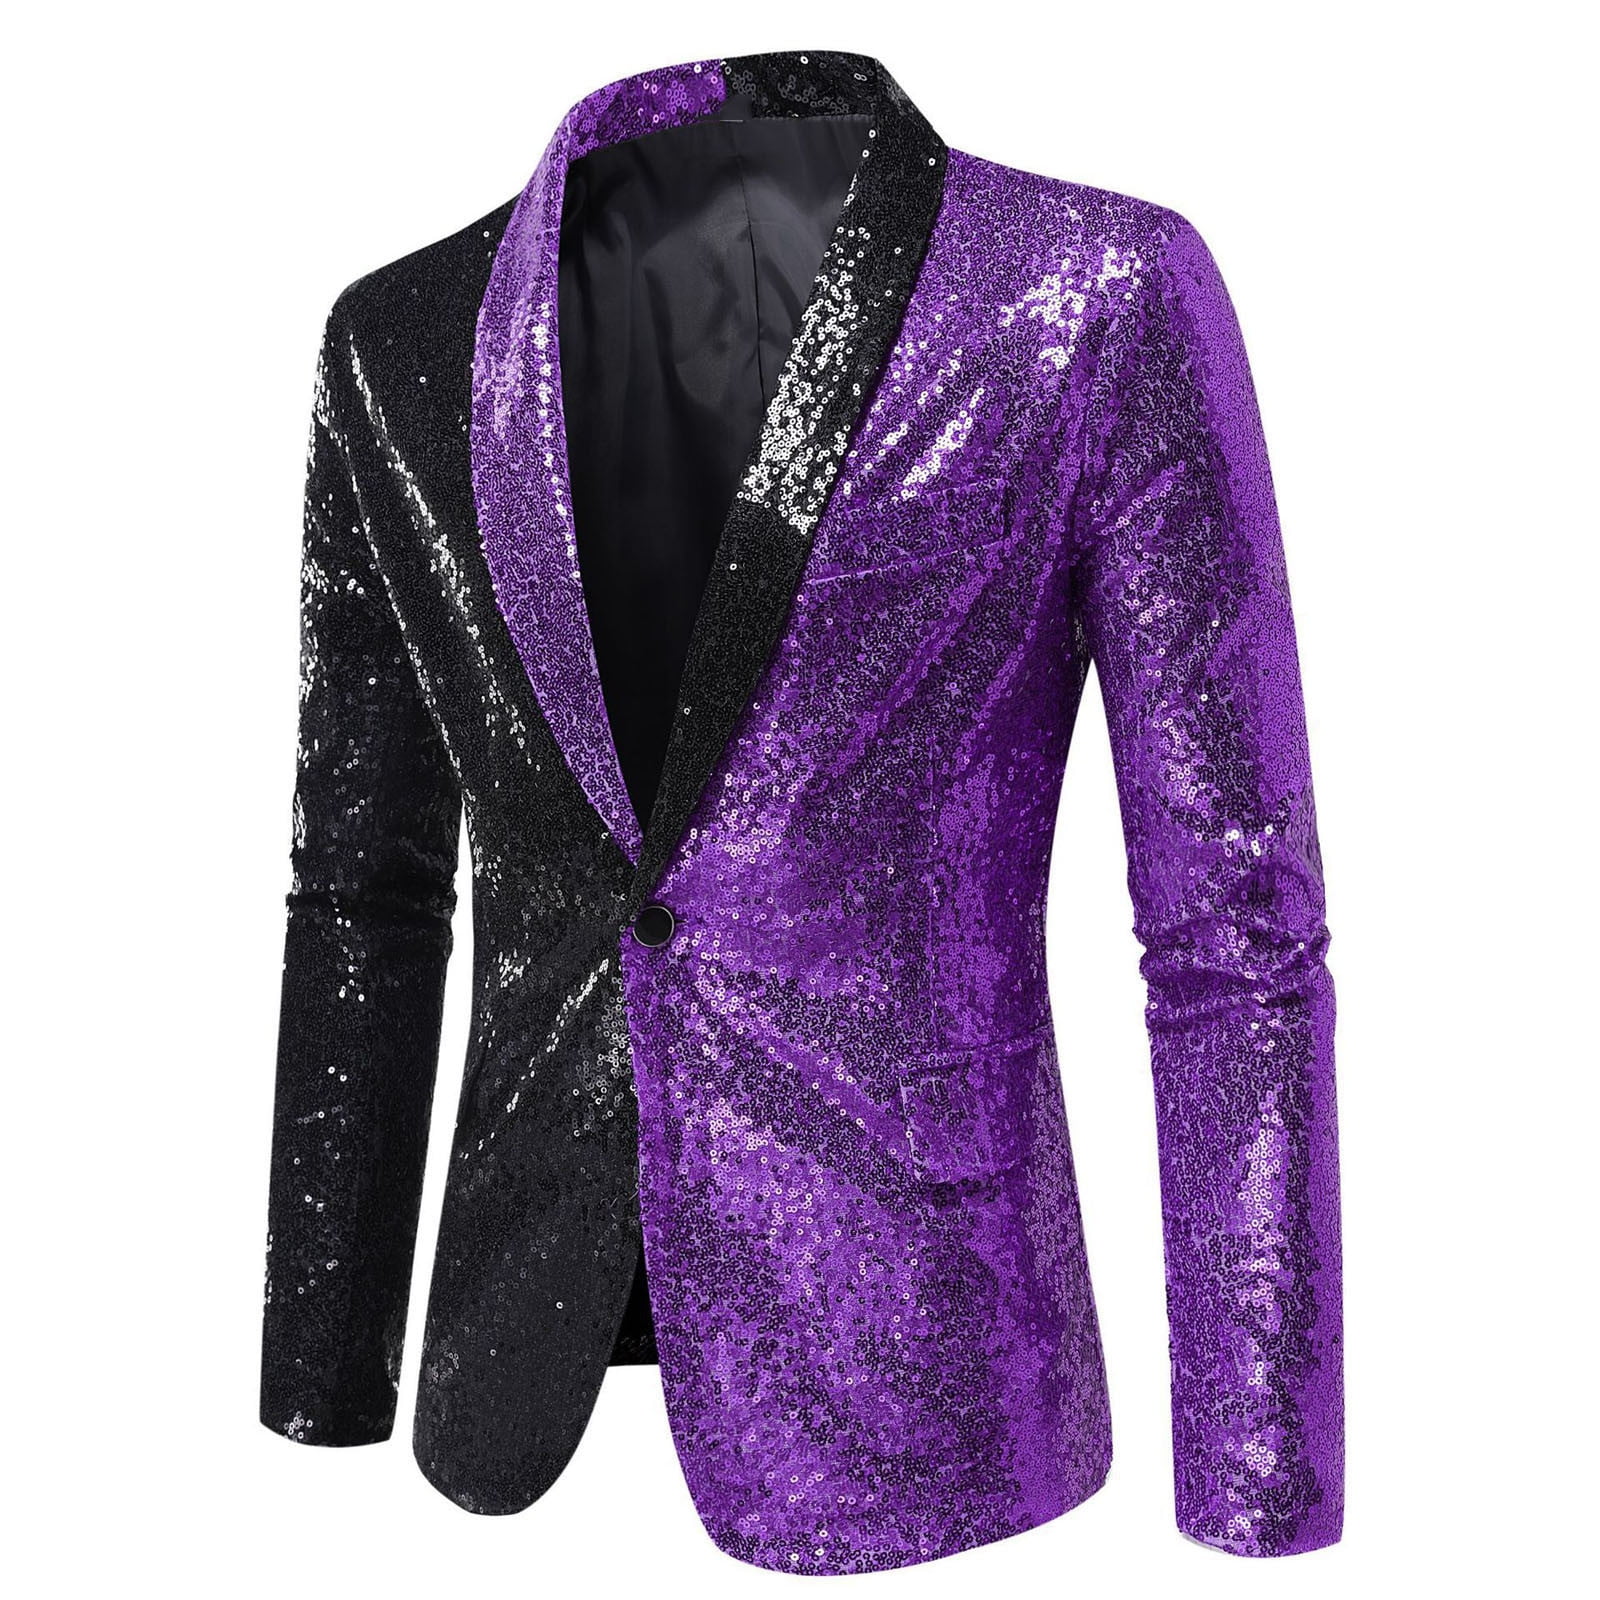 SMihono Winter Fall Men's Color Matching Sequin Suit, One Button Dress,  Performance Suit, Long Sleeved Lapel Collar Suit Jacket Coat Blazer Purple  4 